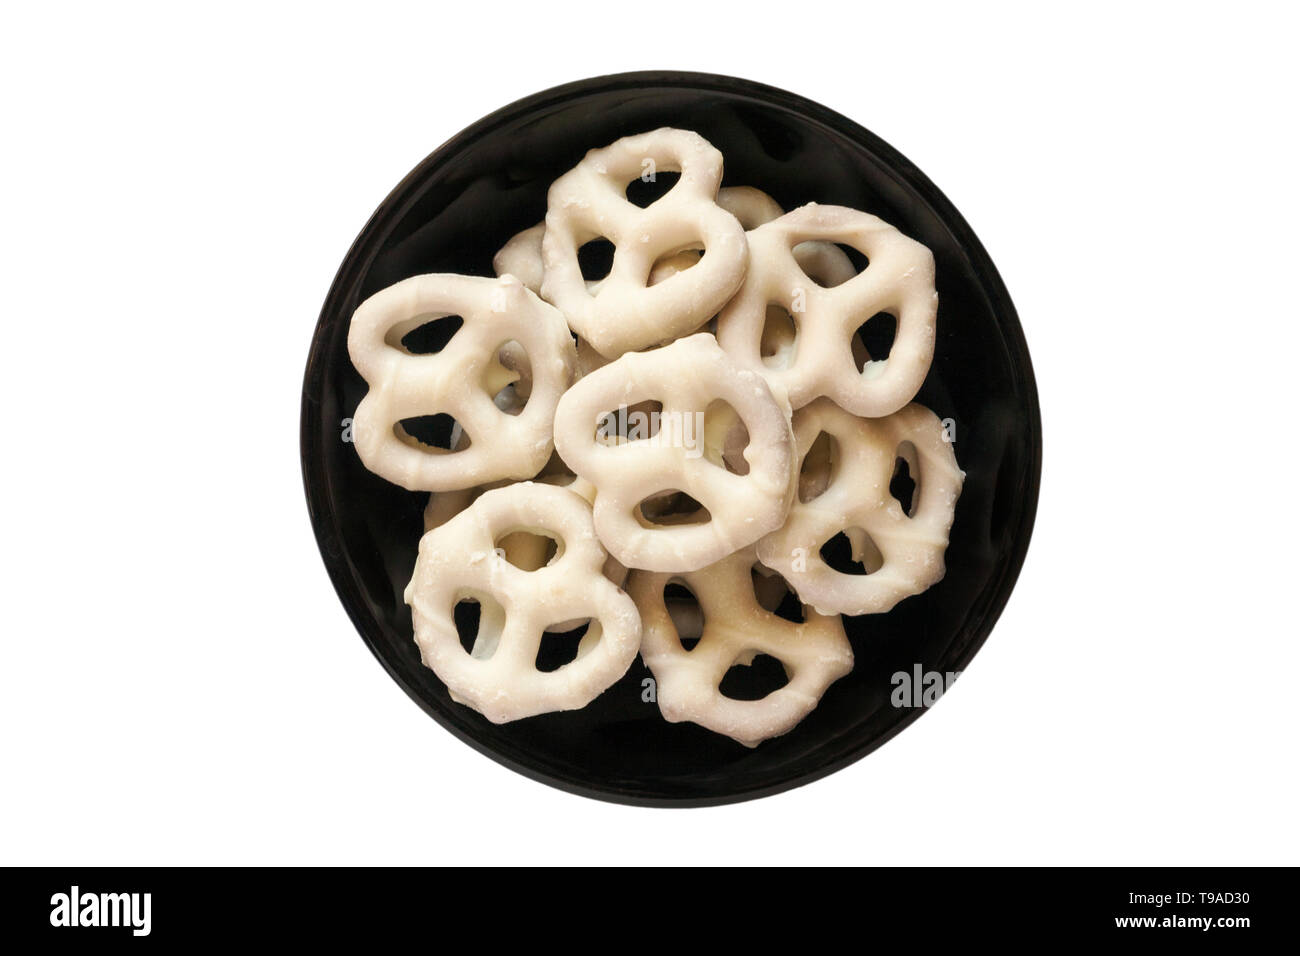 Ciotola di edizione limitata bianco Flipz Fudge coperto pretzel nella ciotola nero piatto isolato su sfondo bianco - bianco fudge rivestito di sapore pretzel Foto Stock